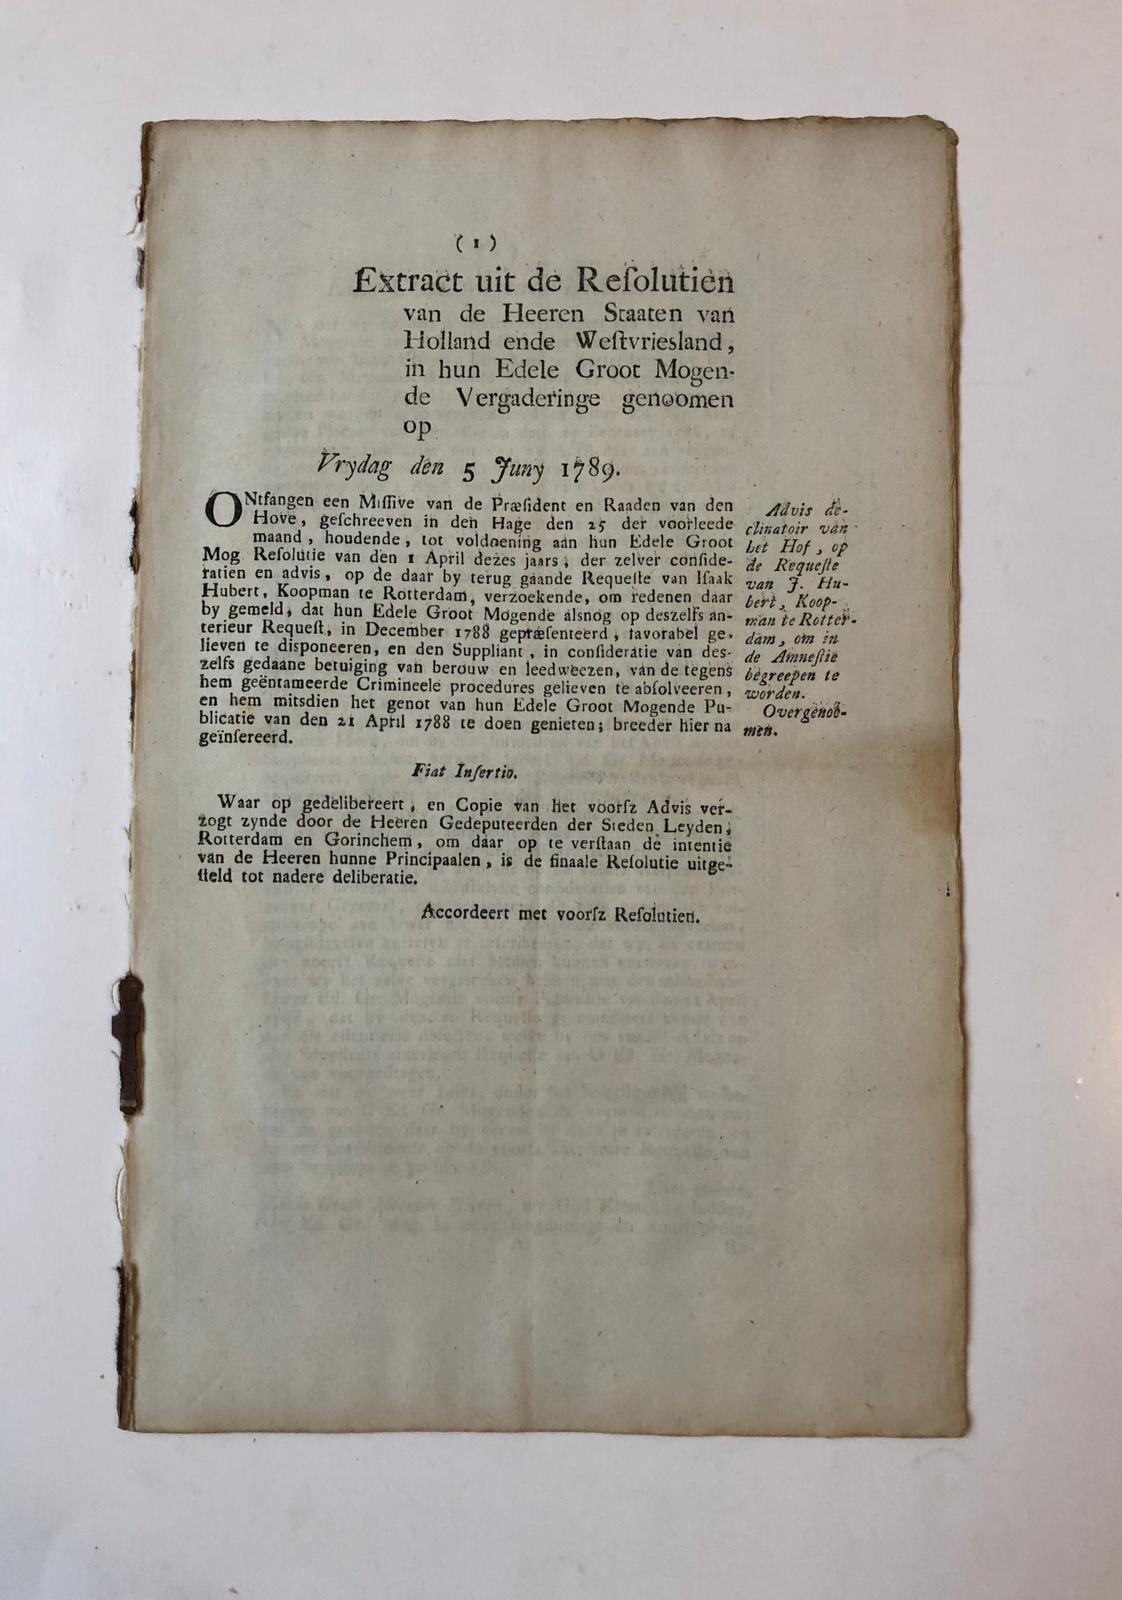  - HUBERT, ROTTERDAM Extract uit de Resolutien van de Staten van Holland d.d. 5-6-1789 betr. een request van Isaak Hubert, koopman te Rotterdam, gedrukt, folio, 8 p.